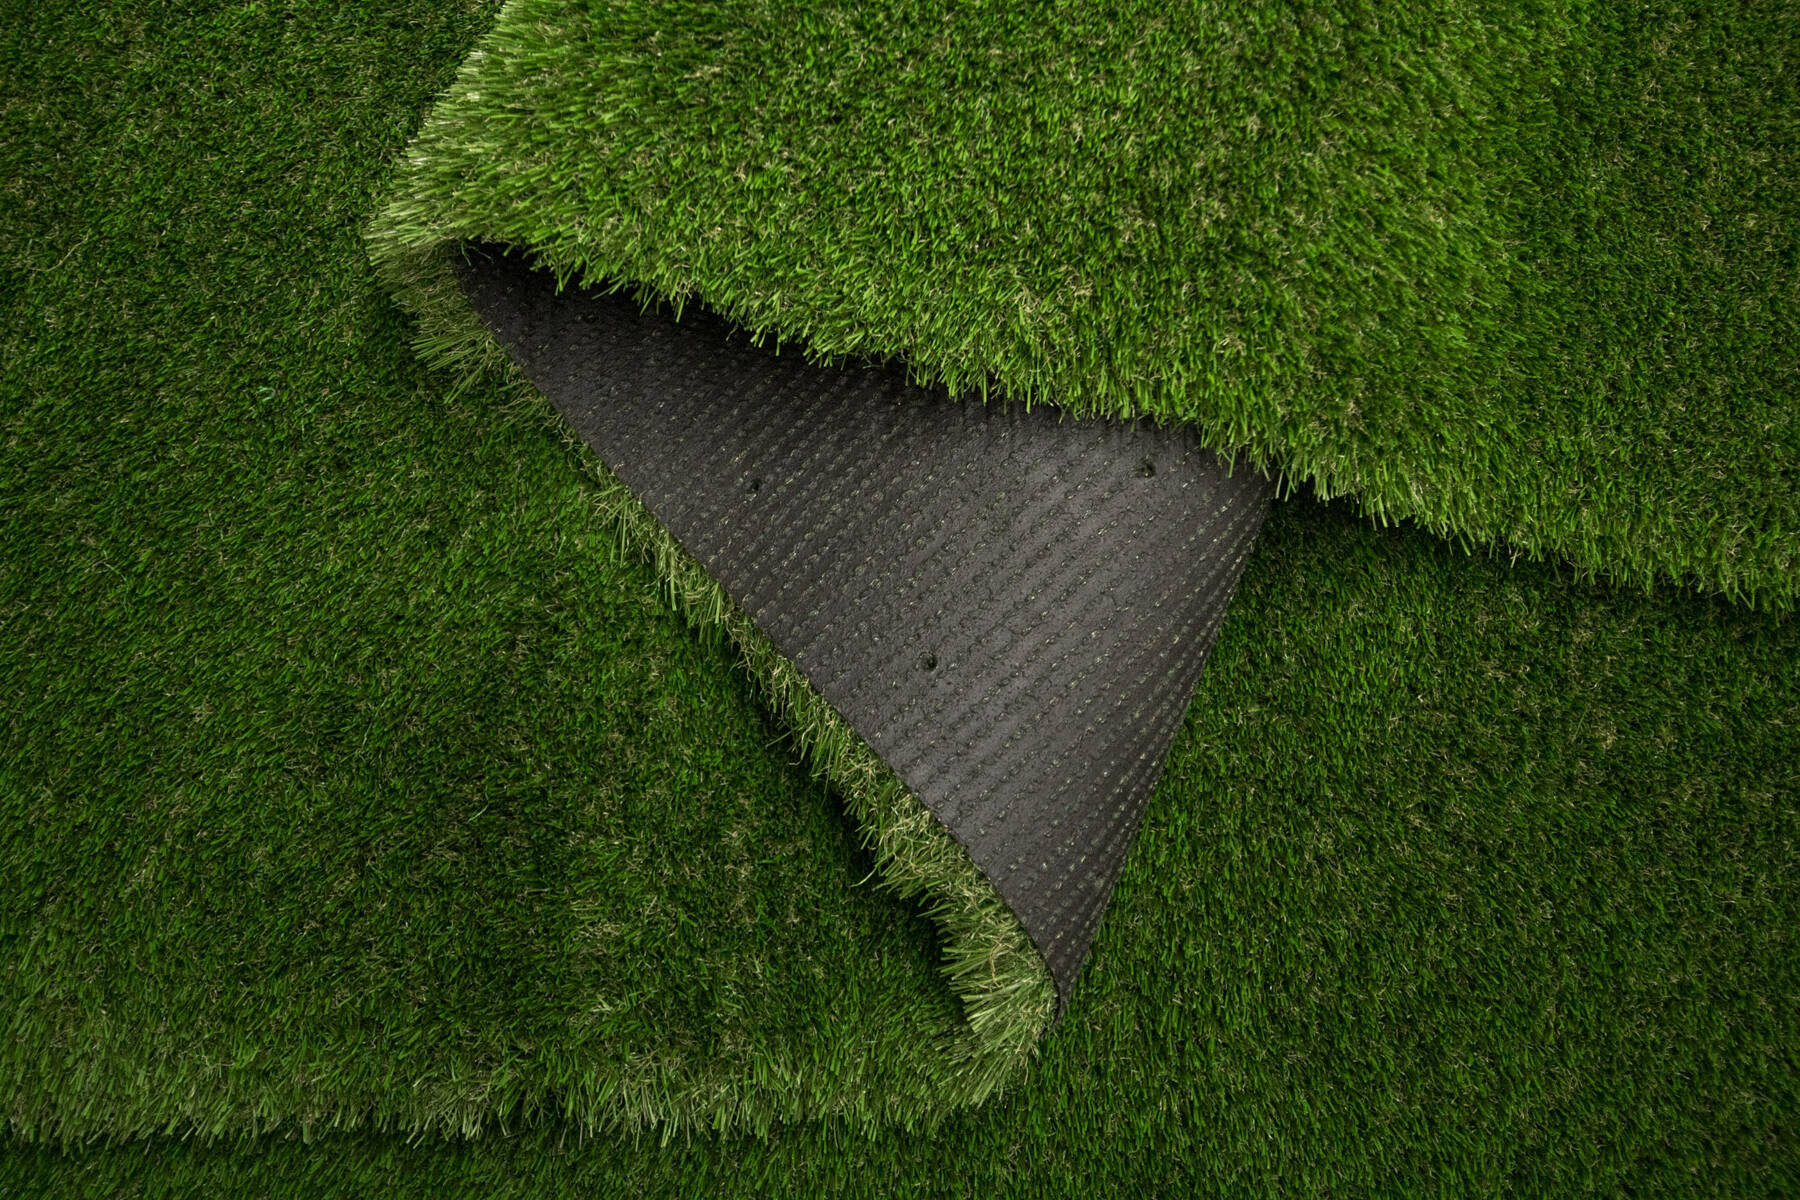 Umělá tráva Soul zelená